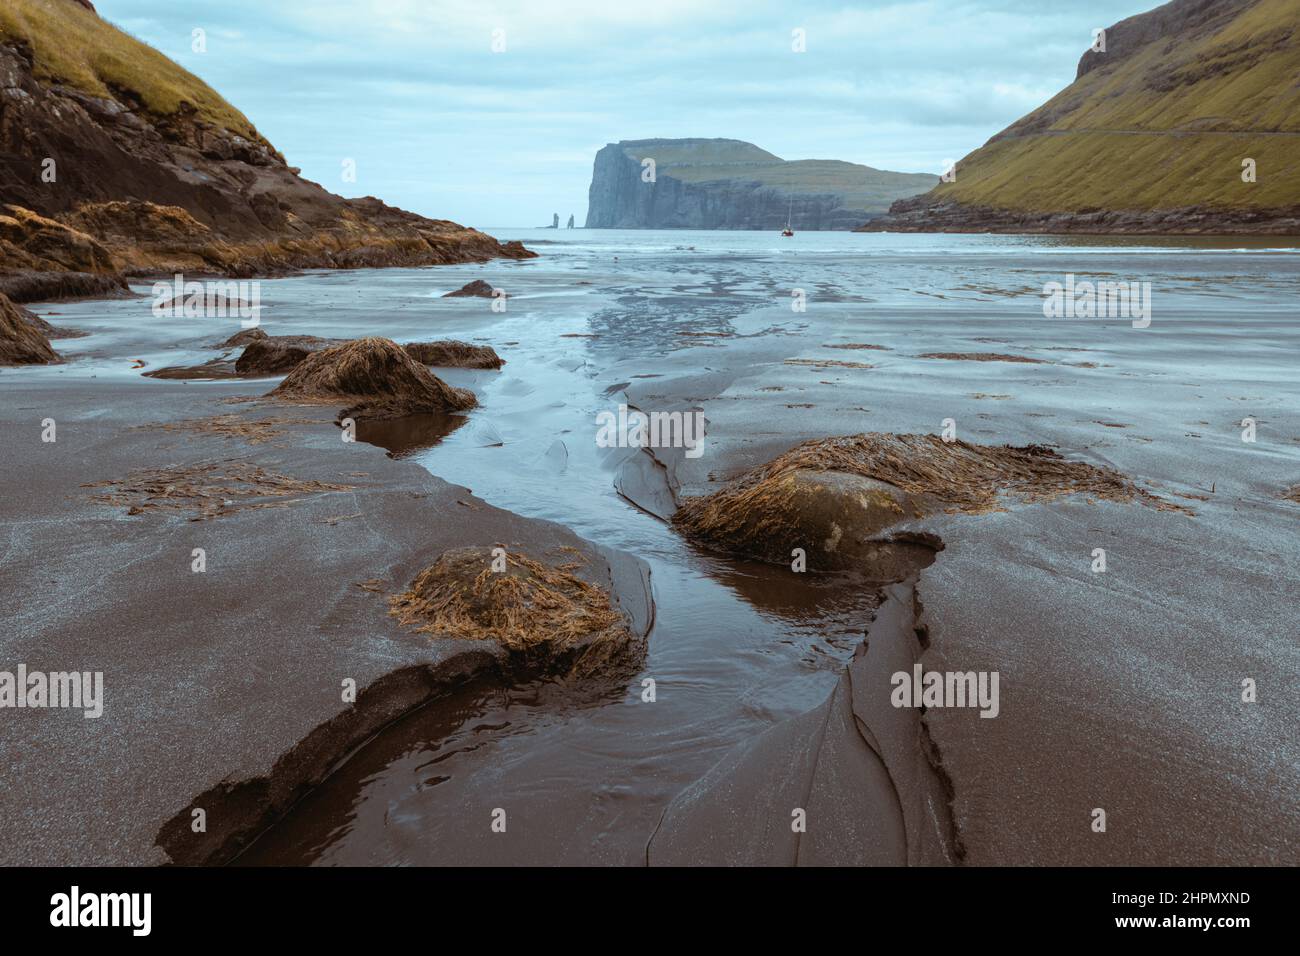 Plage de Tjornuvik sur l'île de Streymoy, îles Féroé, Danemark. Photographie de paysage. Couleurs de numérisation de film rétro Banque D'Images